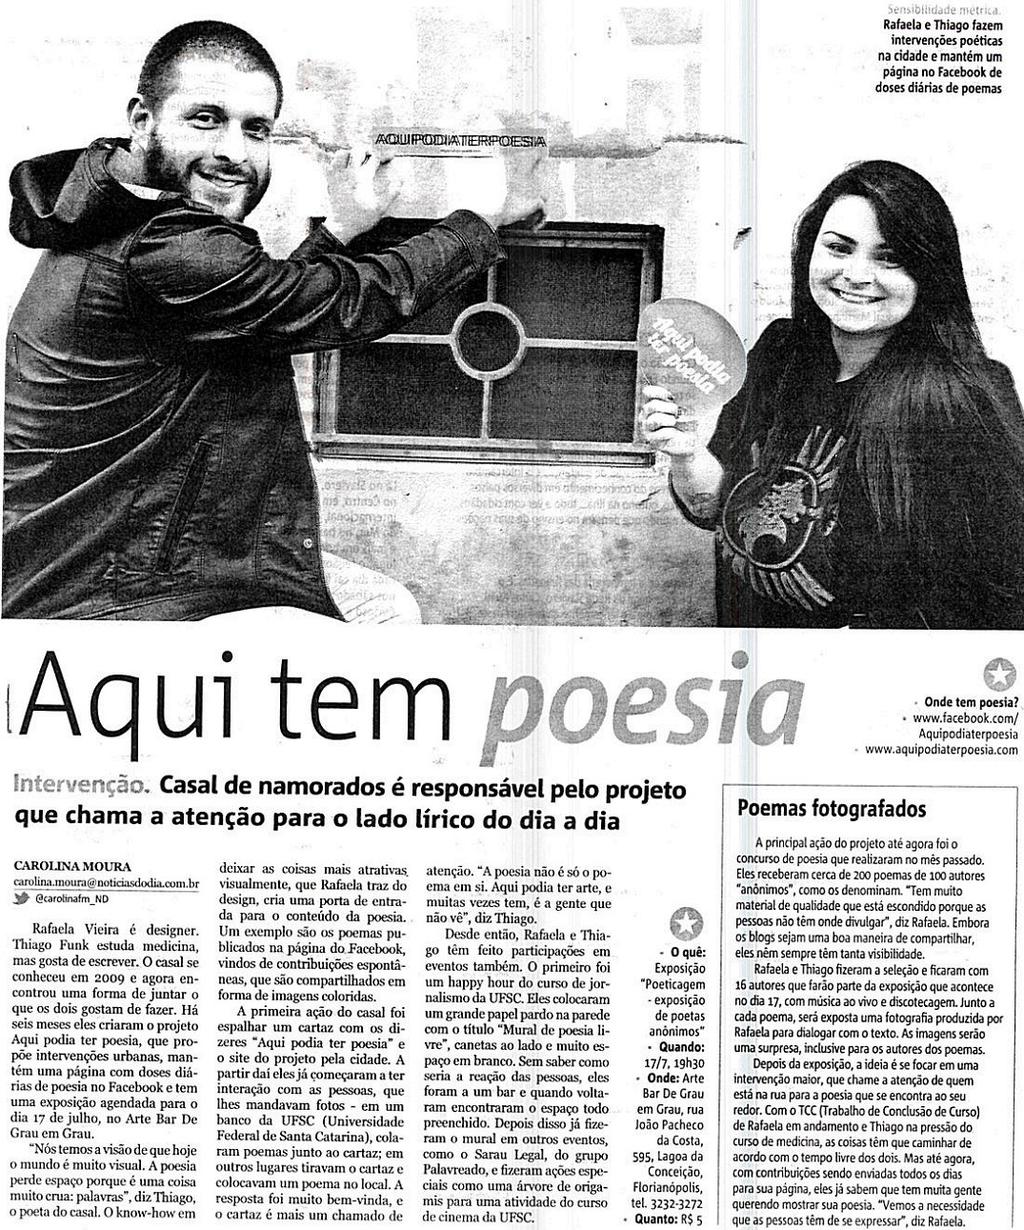 poesia Projeto Aqui podia ter poesia / Rafaela Vieira / Thiago Funk / Página no Facebook / Happy hour do curso de Jornalismo